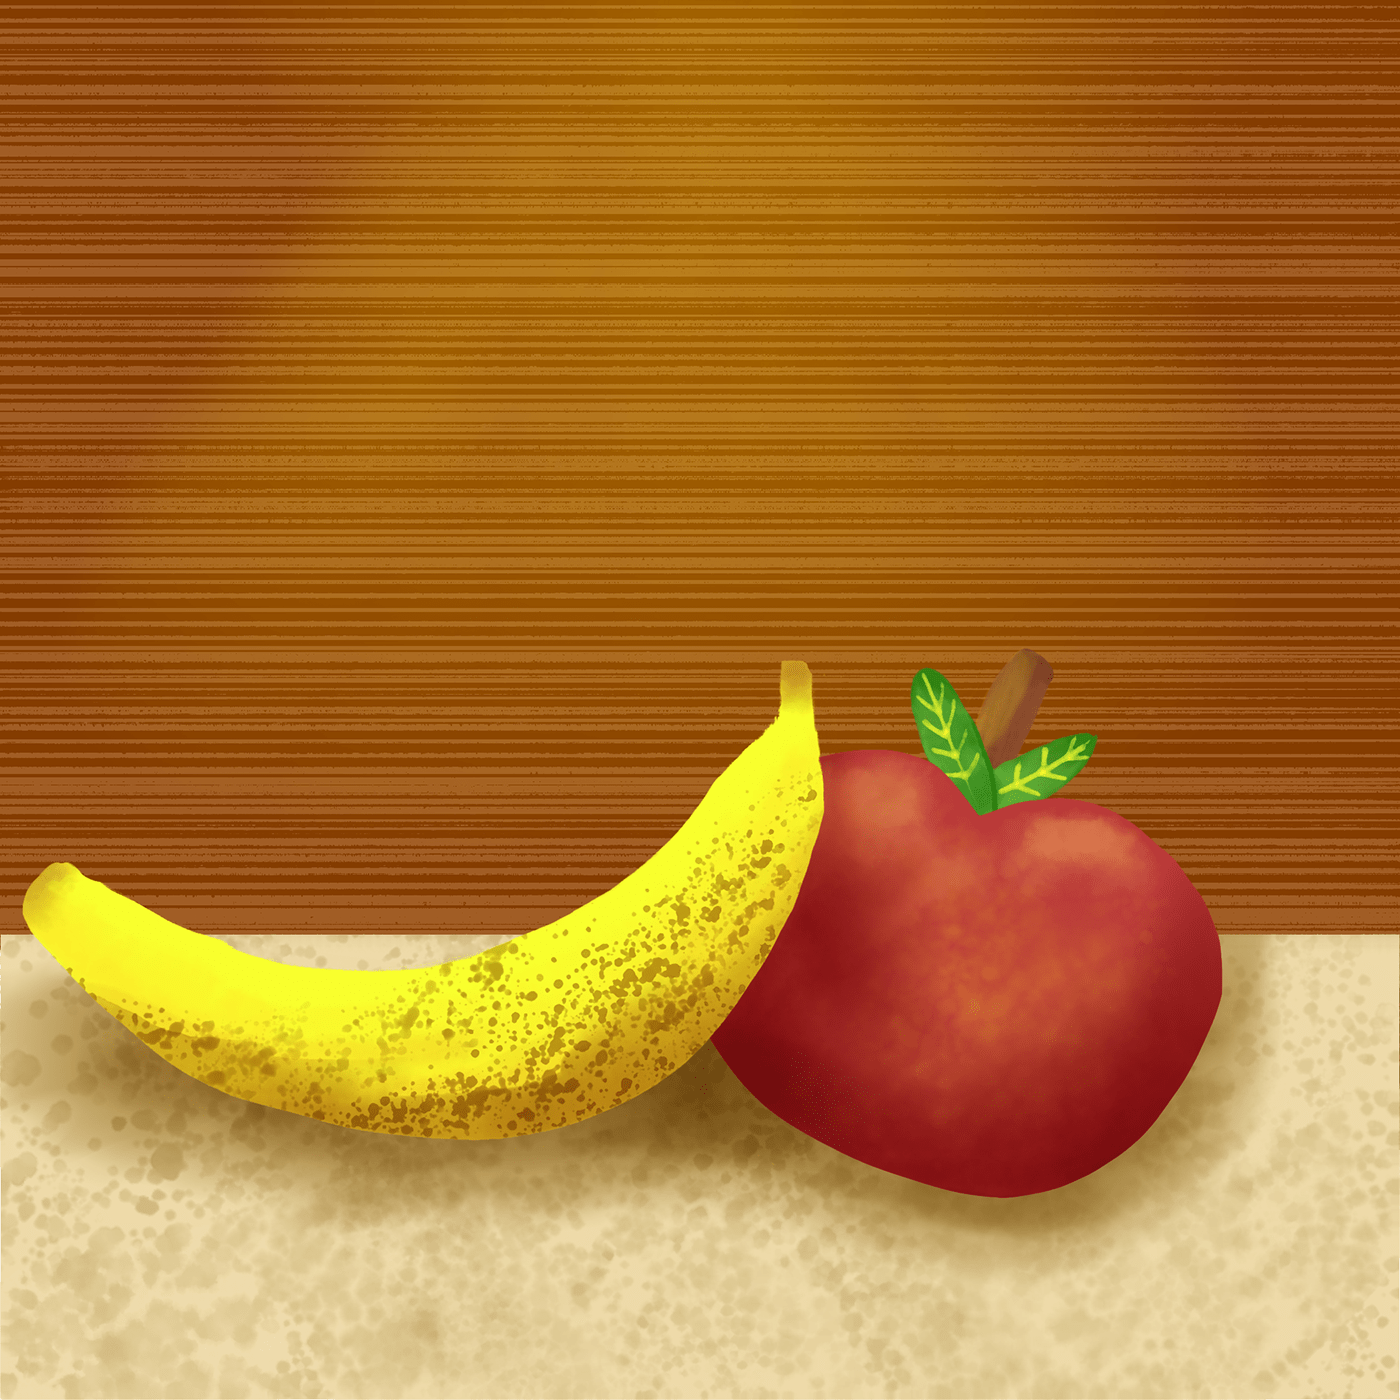 adobe fresco apple banana digital painting digital watercolor Fruit live brushes SemiRealism watercolor